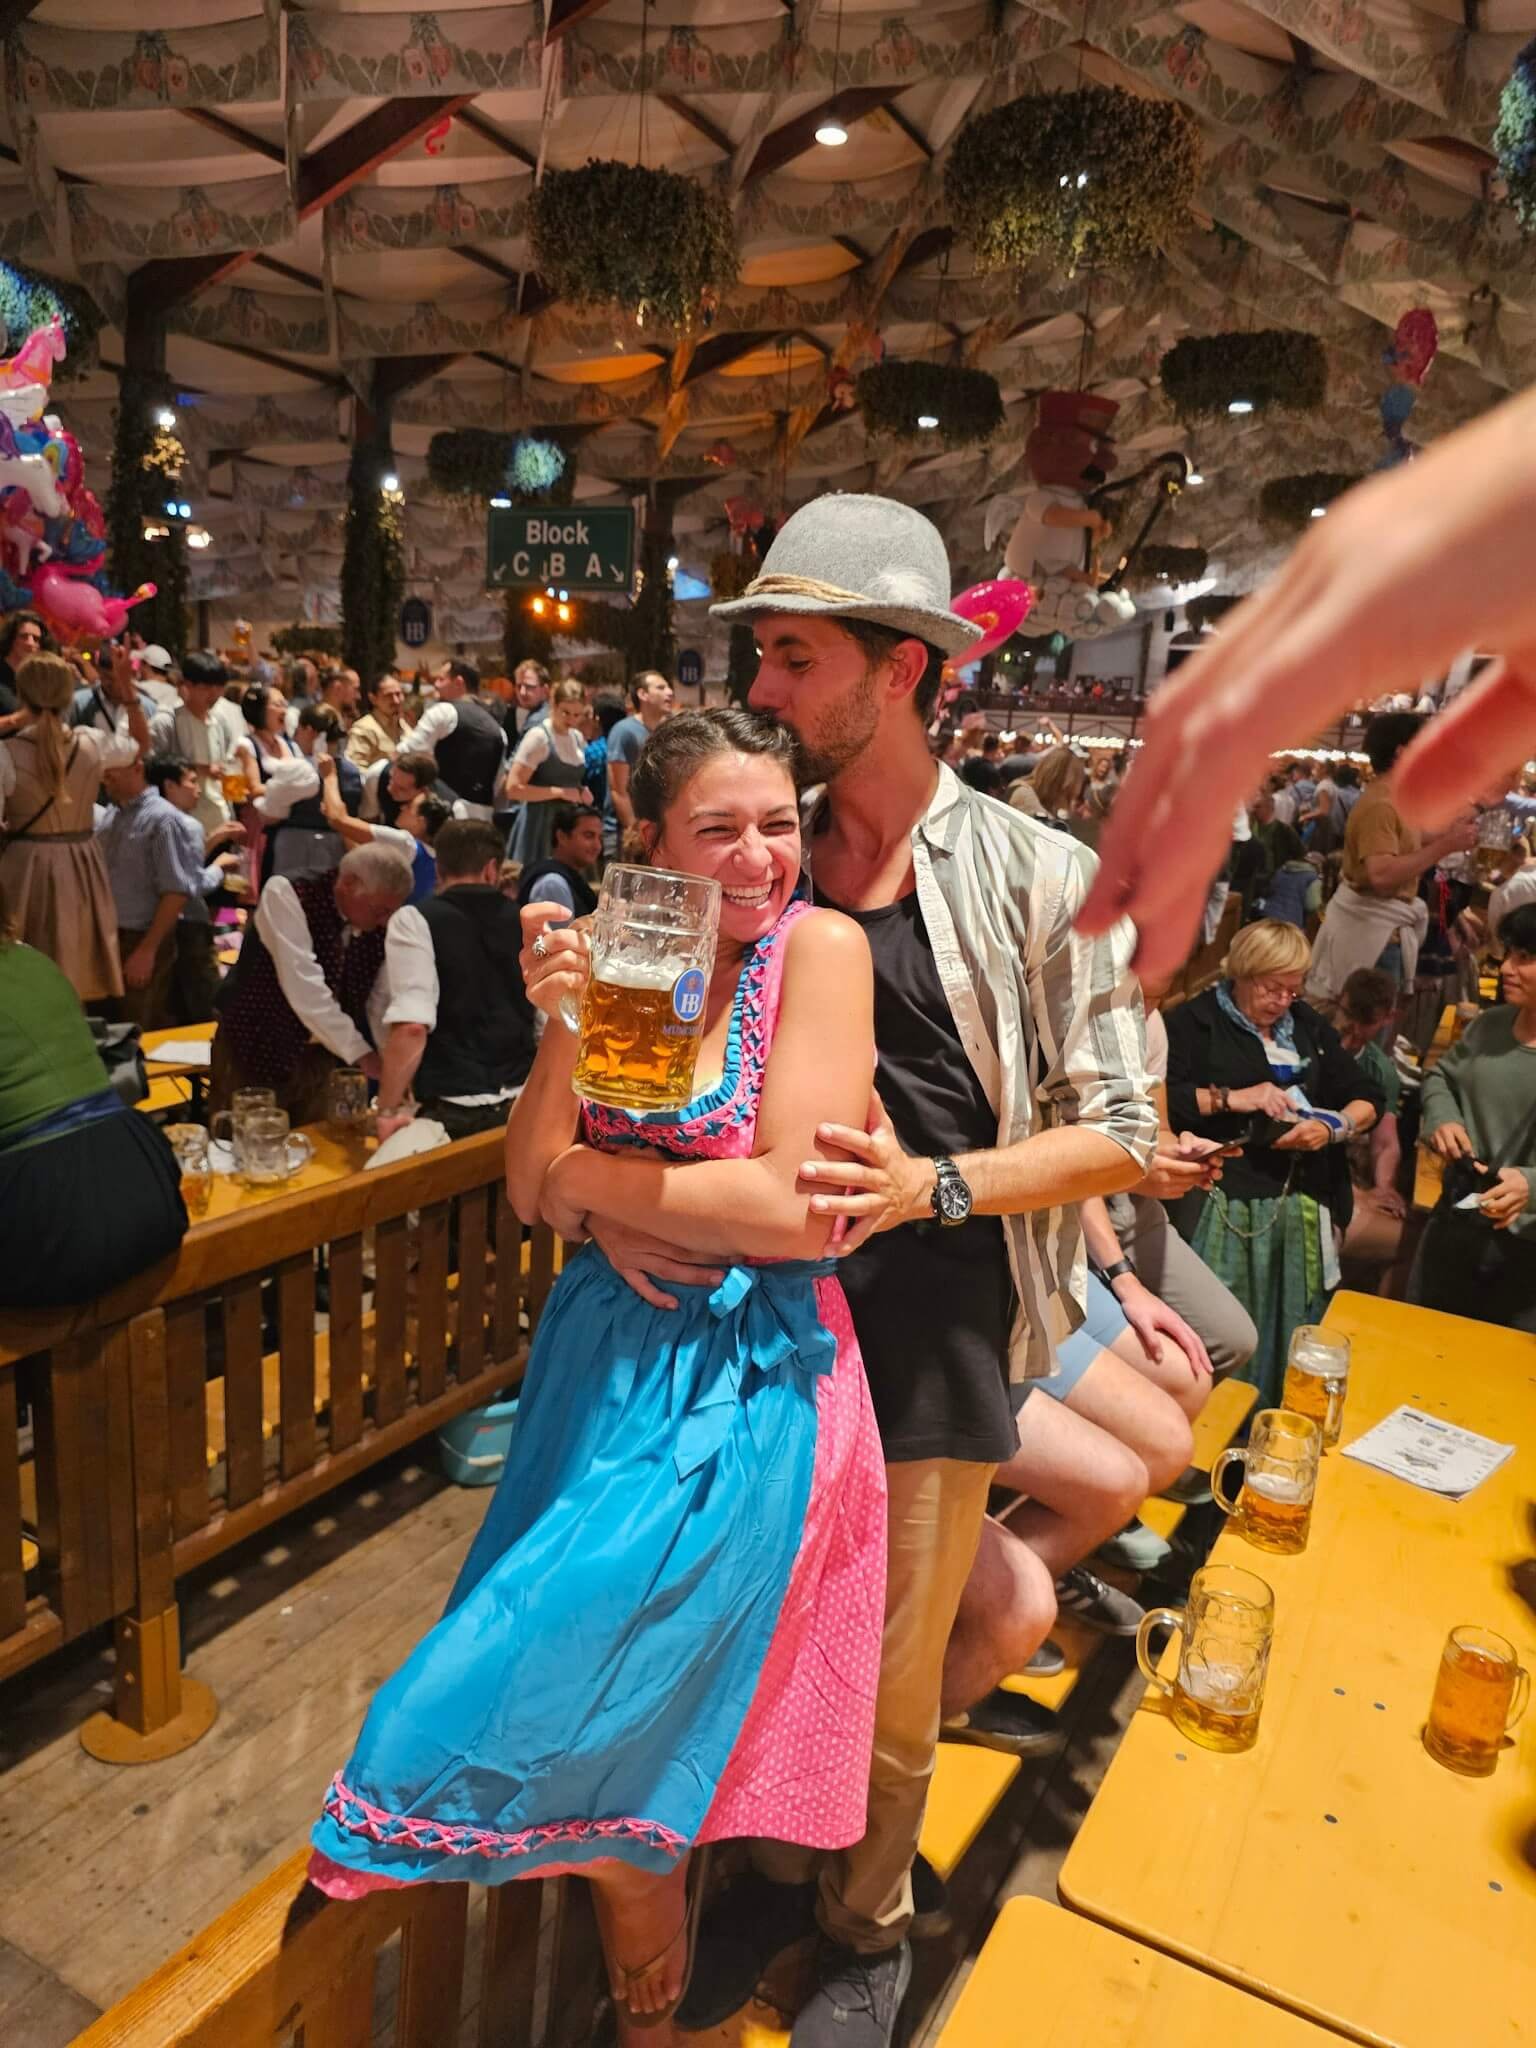 Oktoberfest, festivals around the world